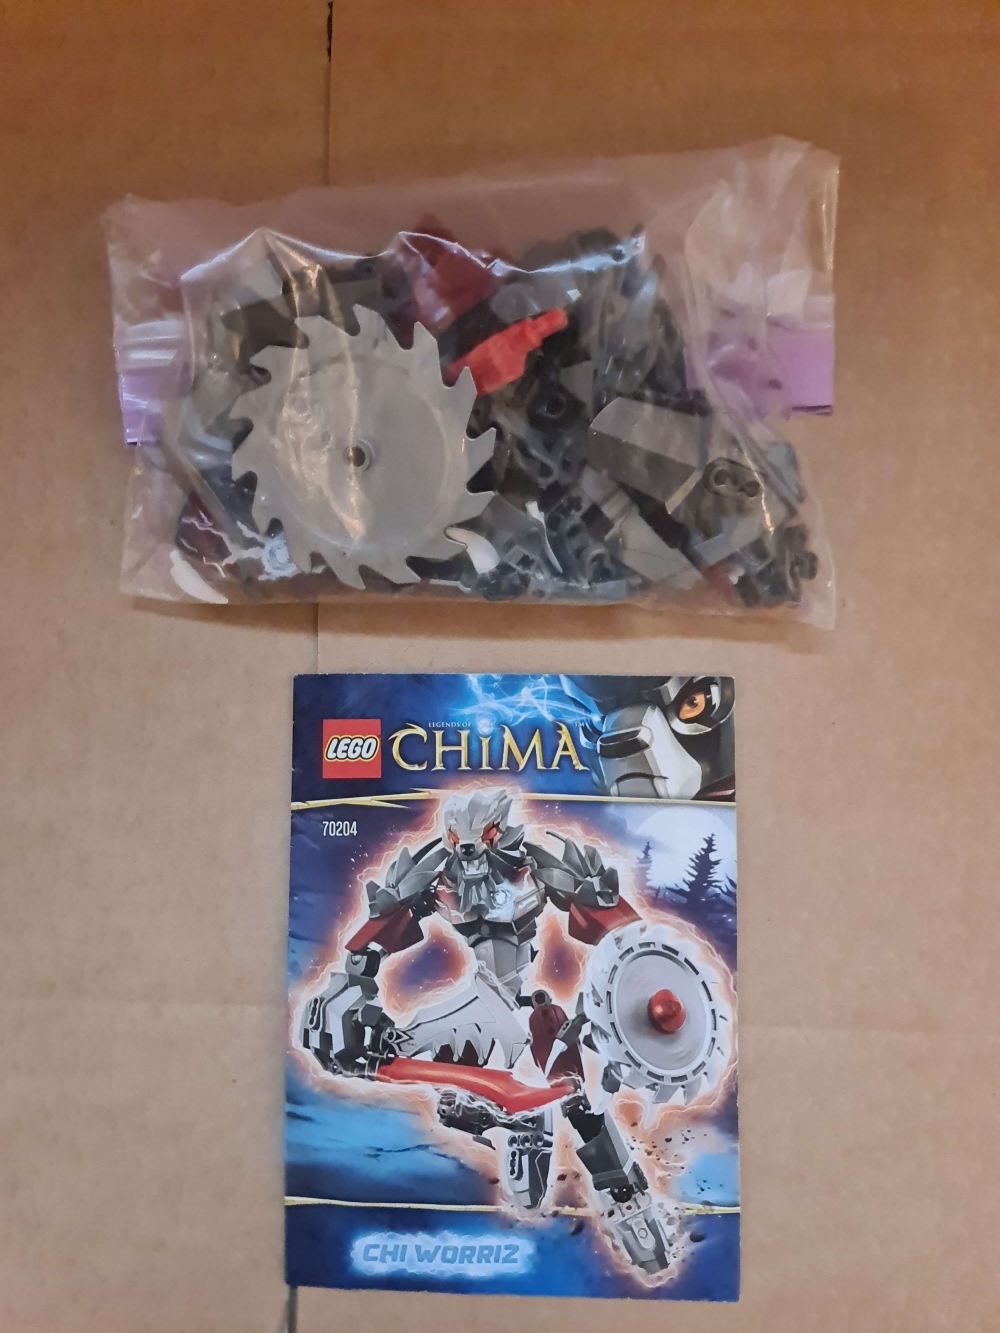 Sett 70204 fra lego Chima serien.

Meget pent. Komplett med manual. 
